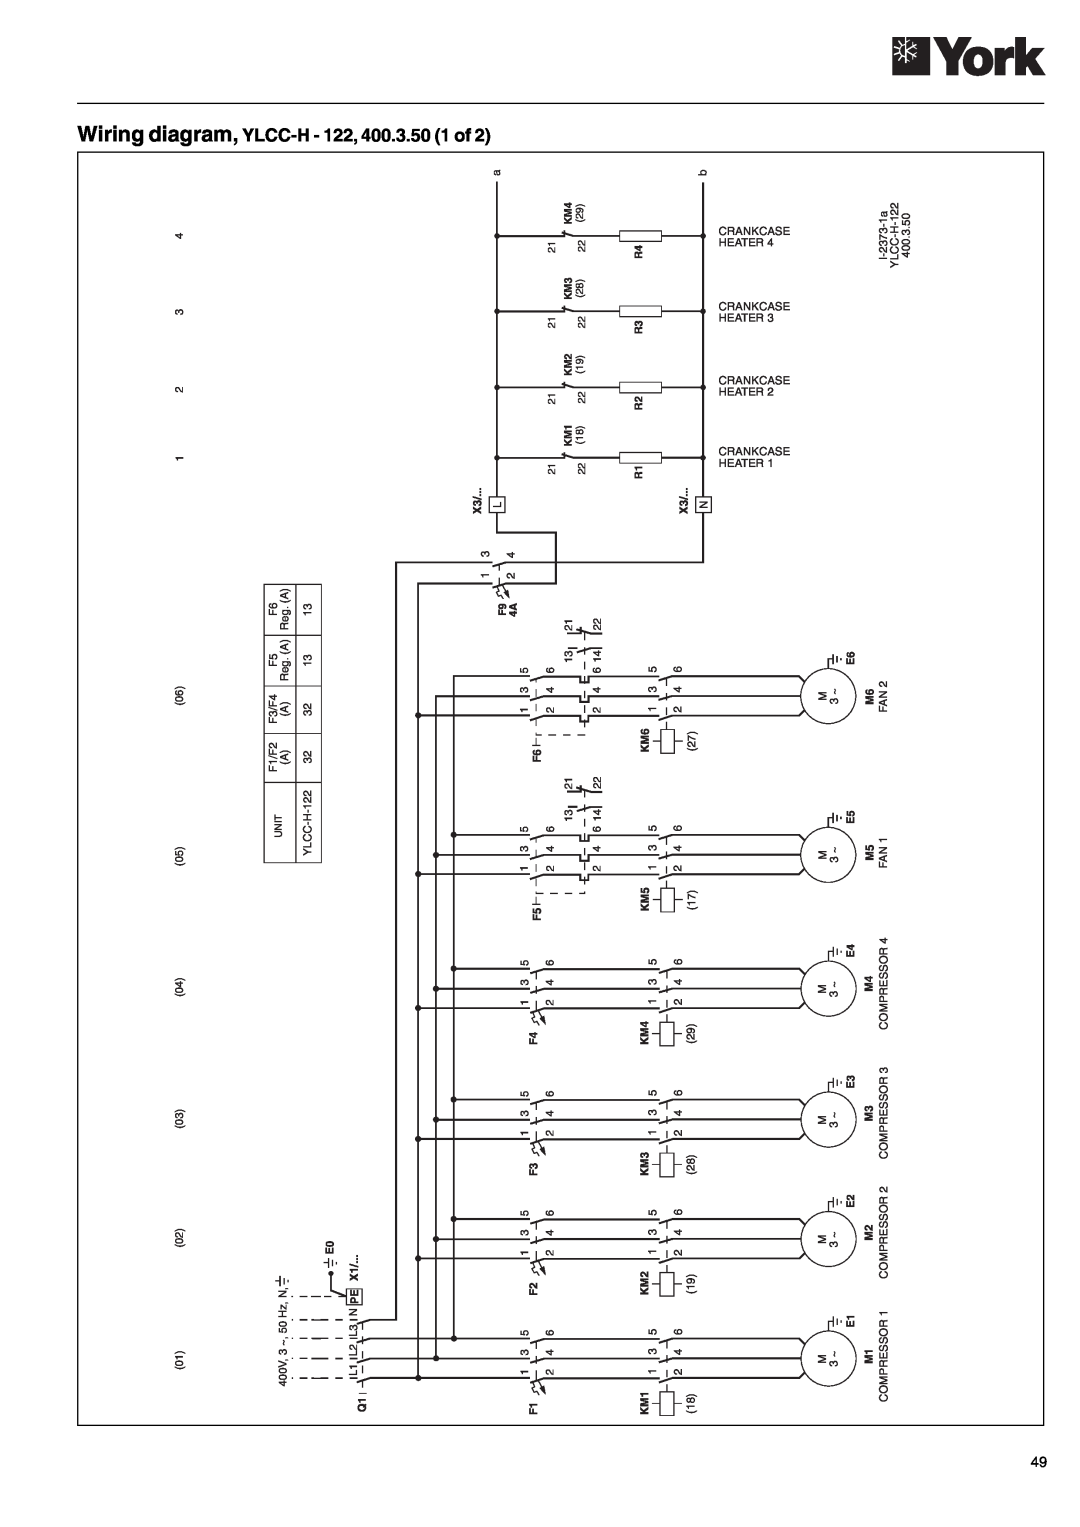 York YLCC-h, YLCC 42/62/82/102/112, 152 manual Wiring diagram, YLCC-H- 122, 400.3.50 1 of 